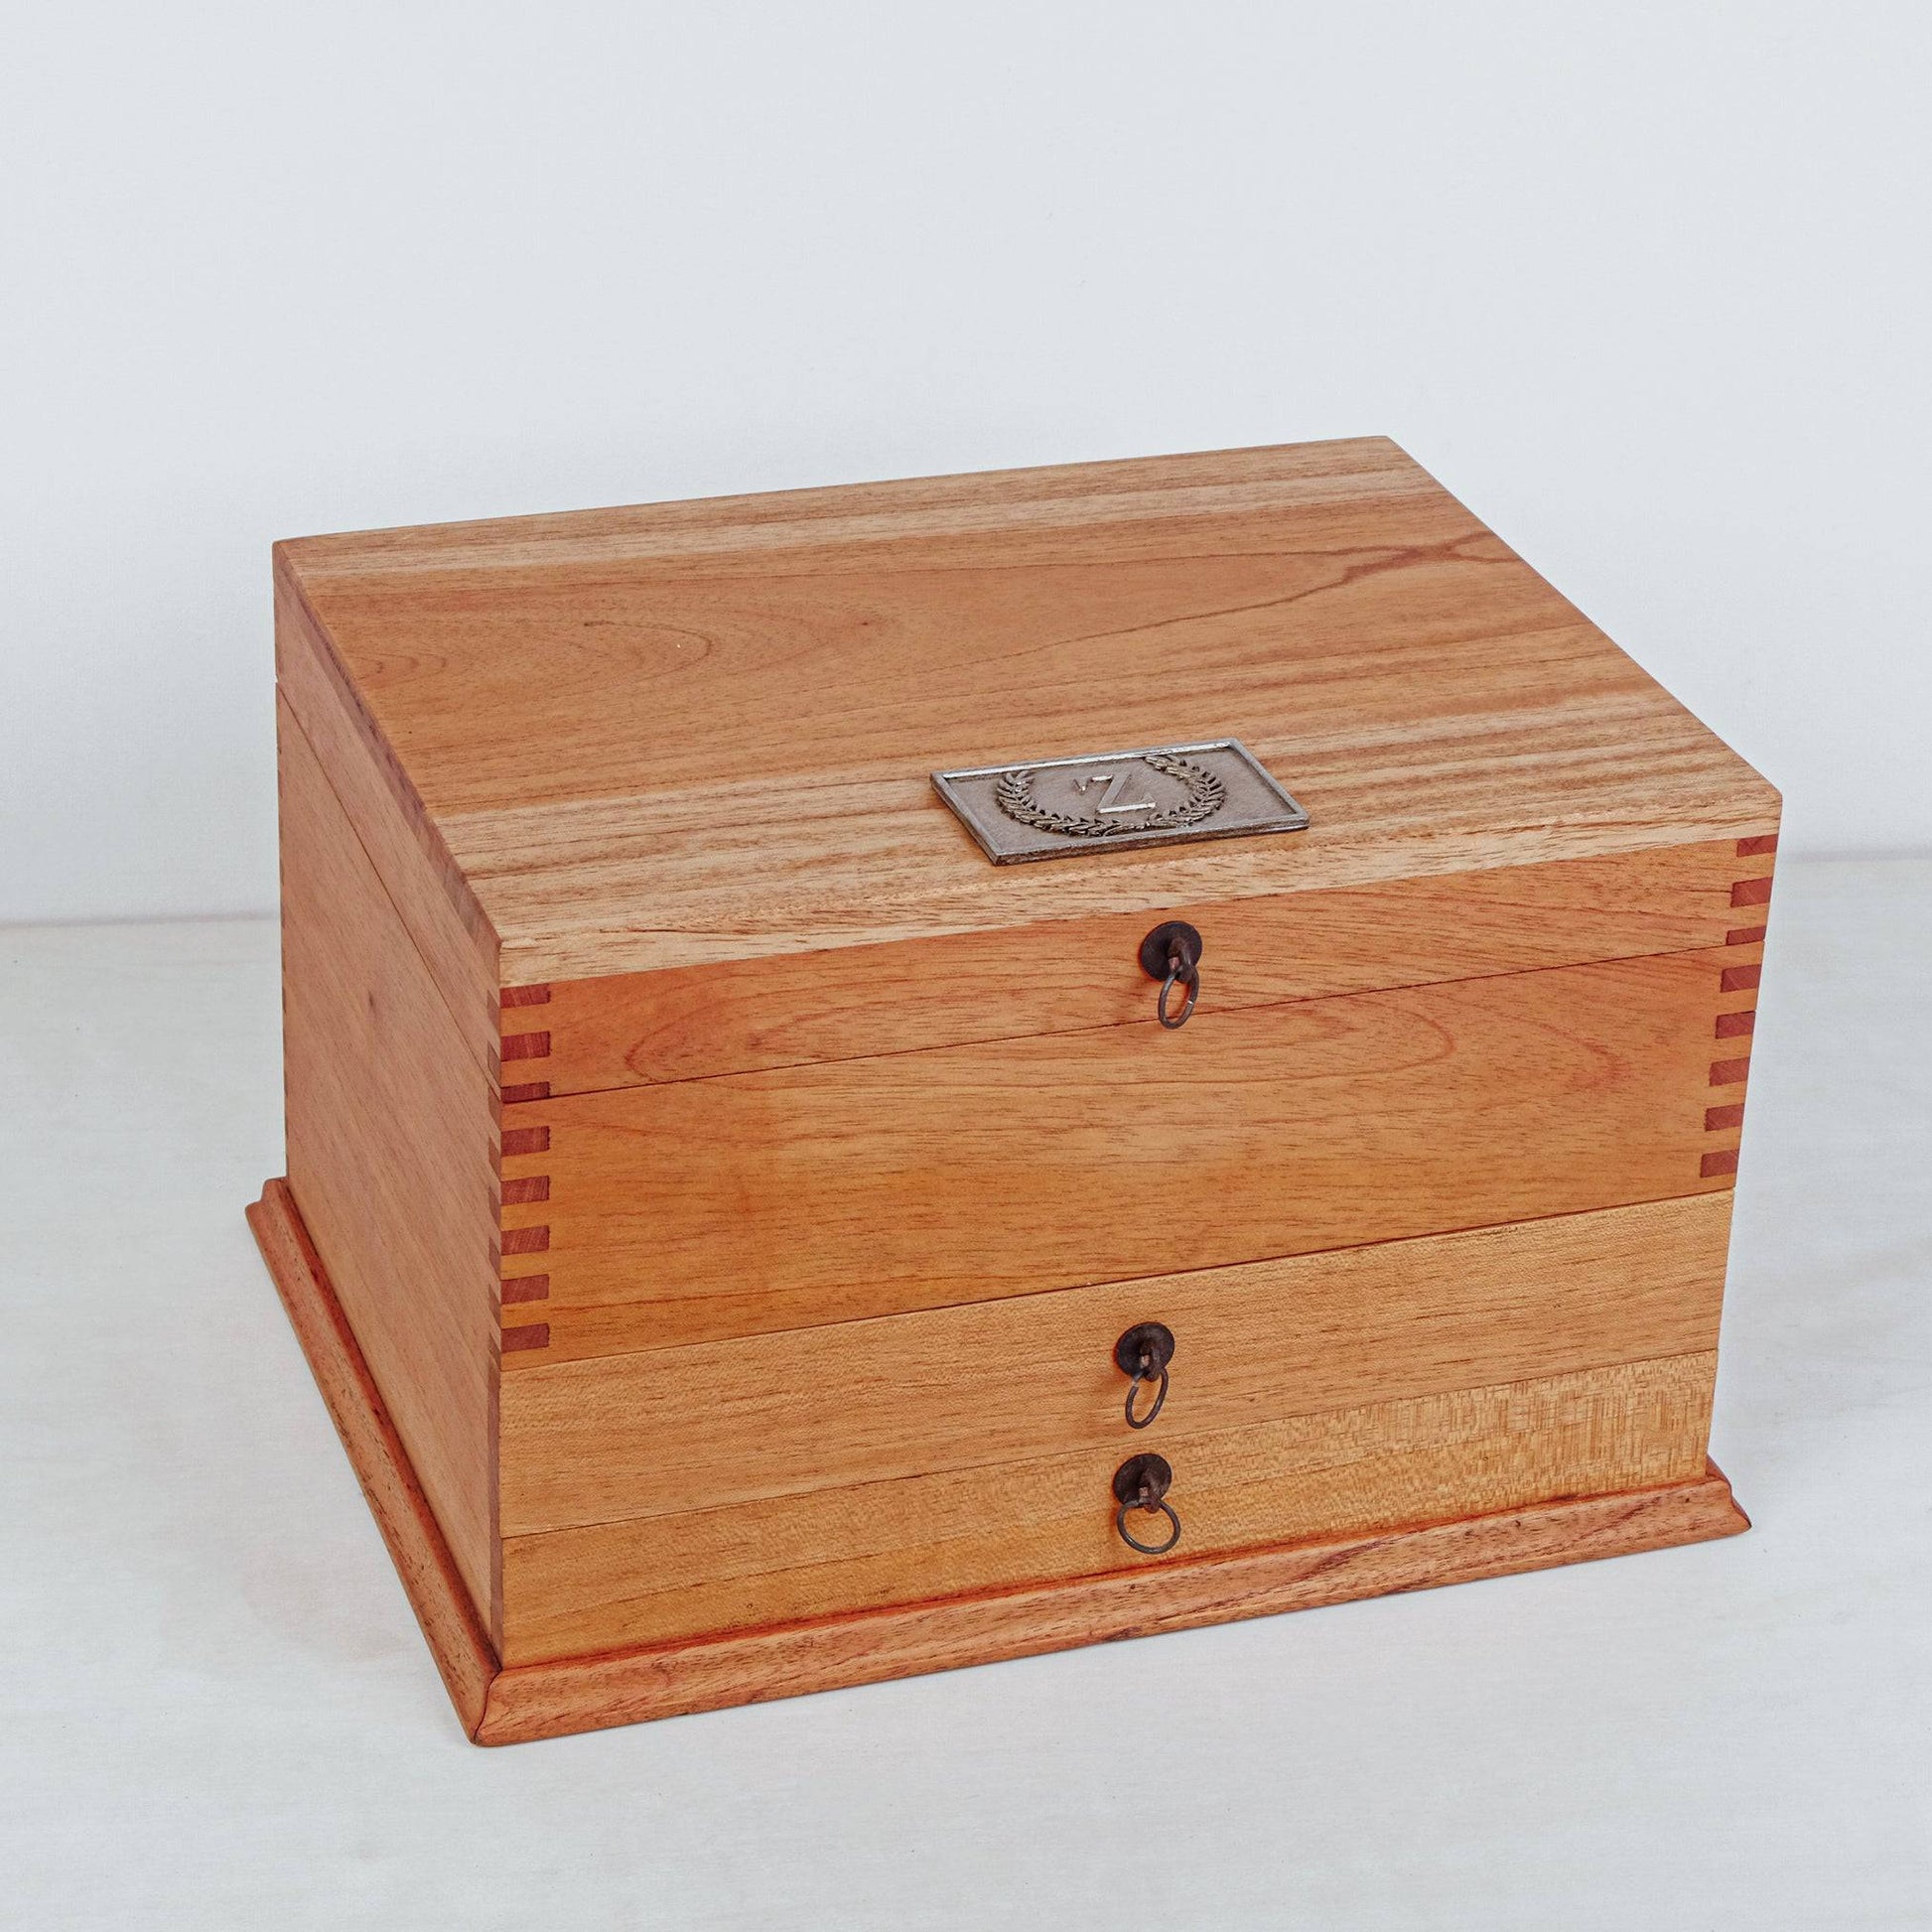 Modern Watch Box Organizer - Solid Cedar Wood